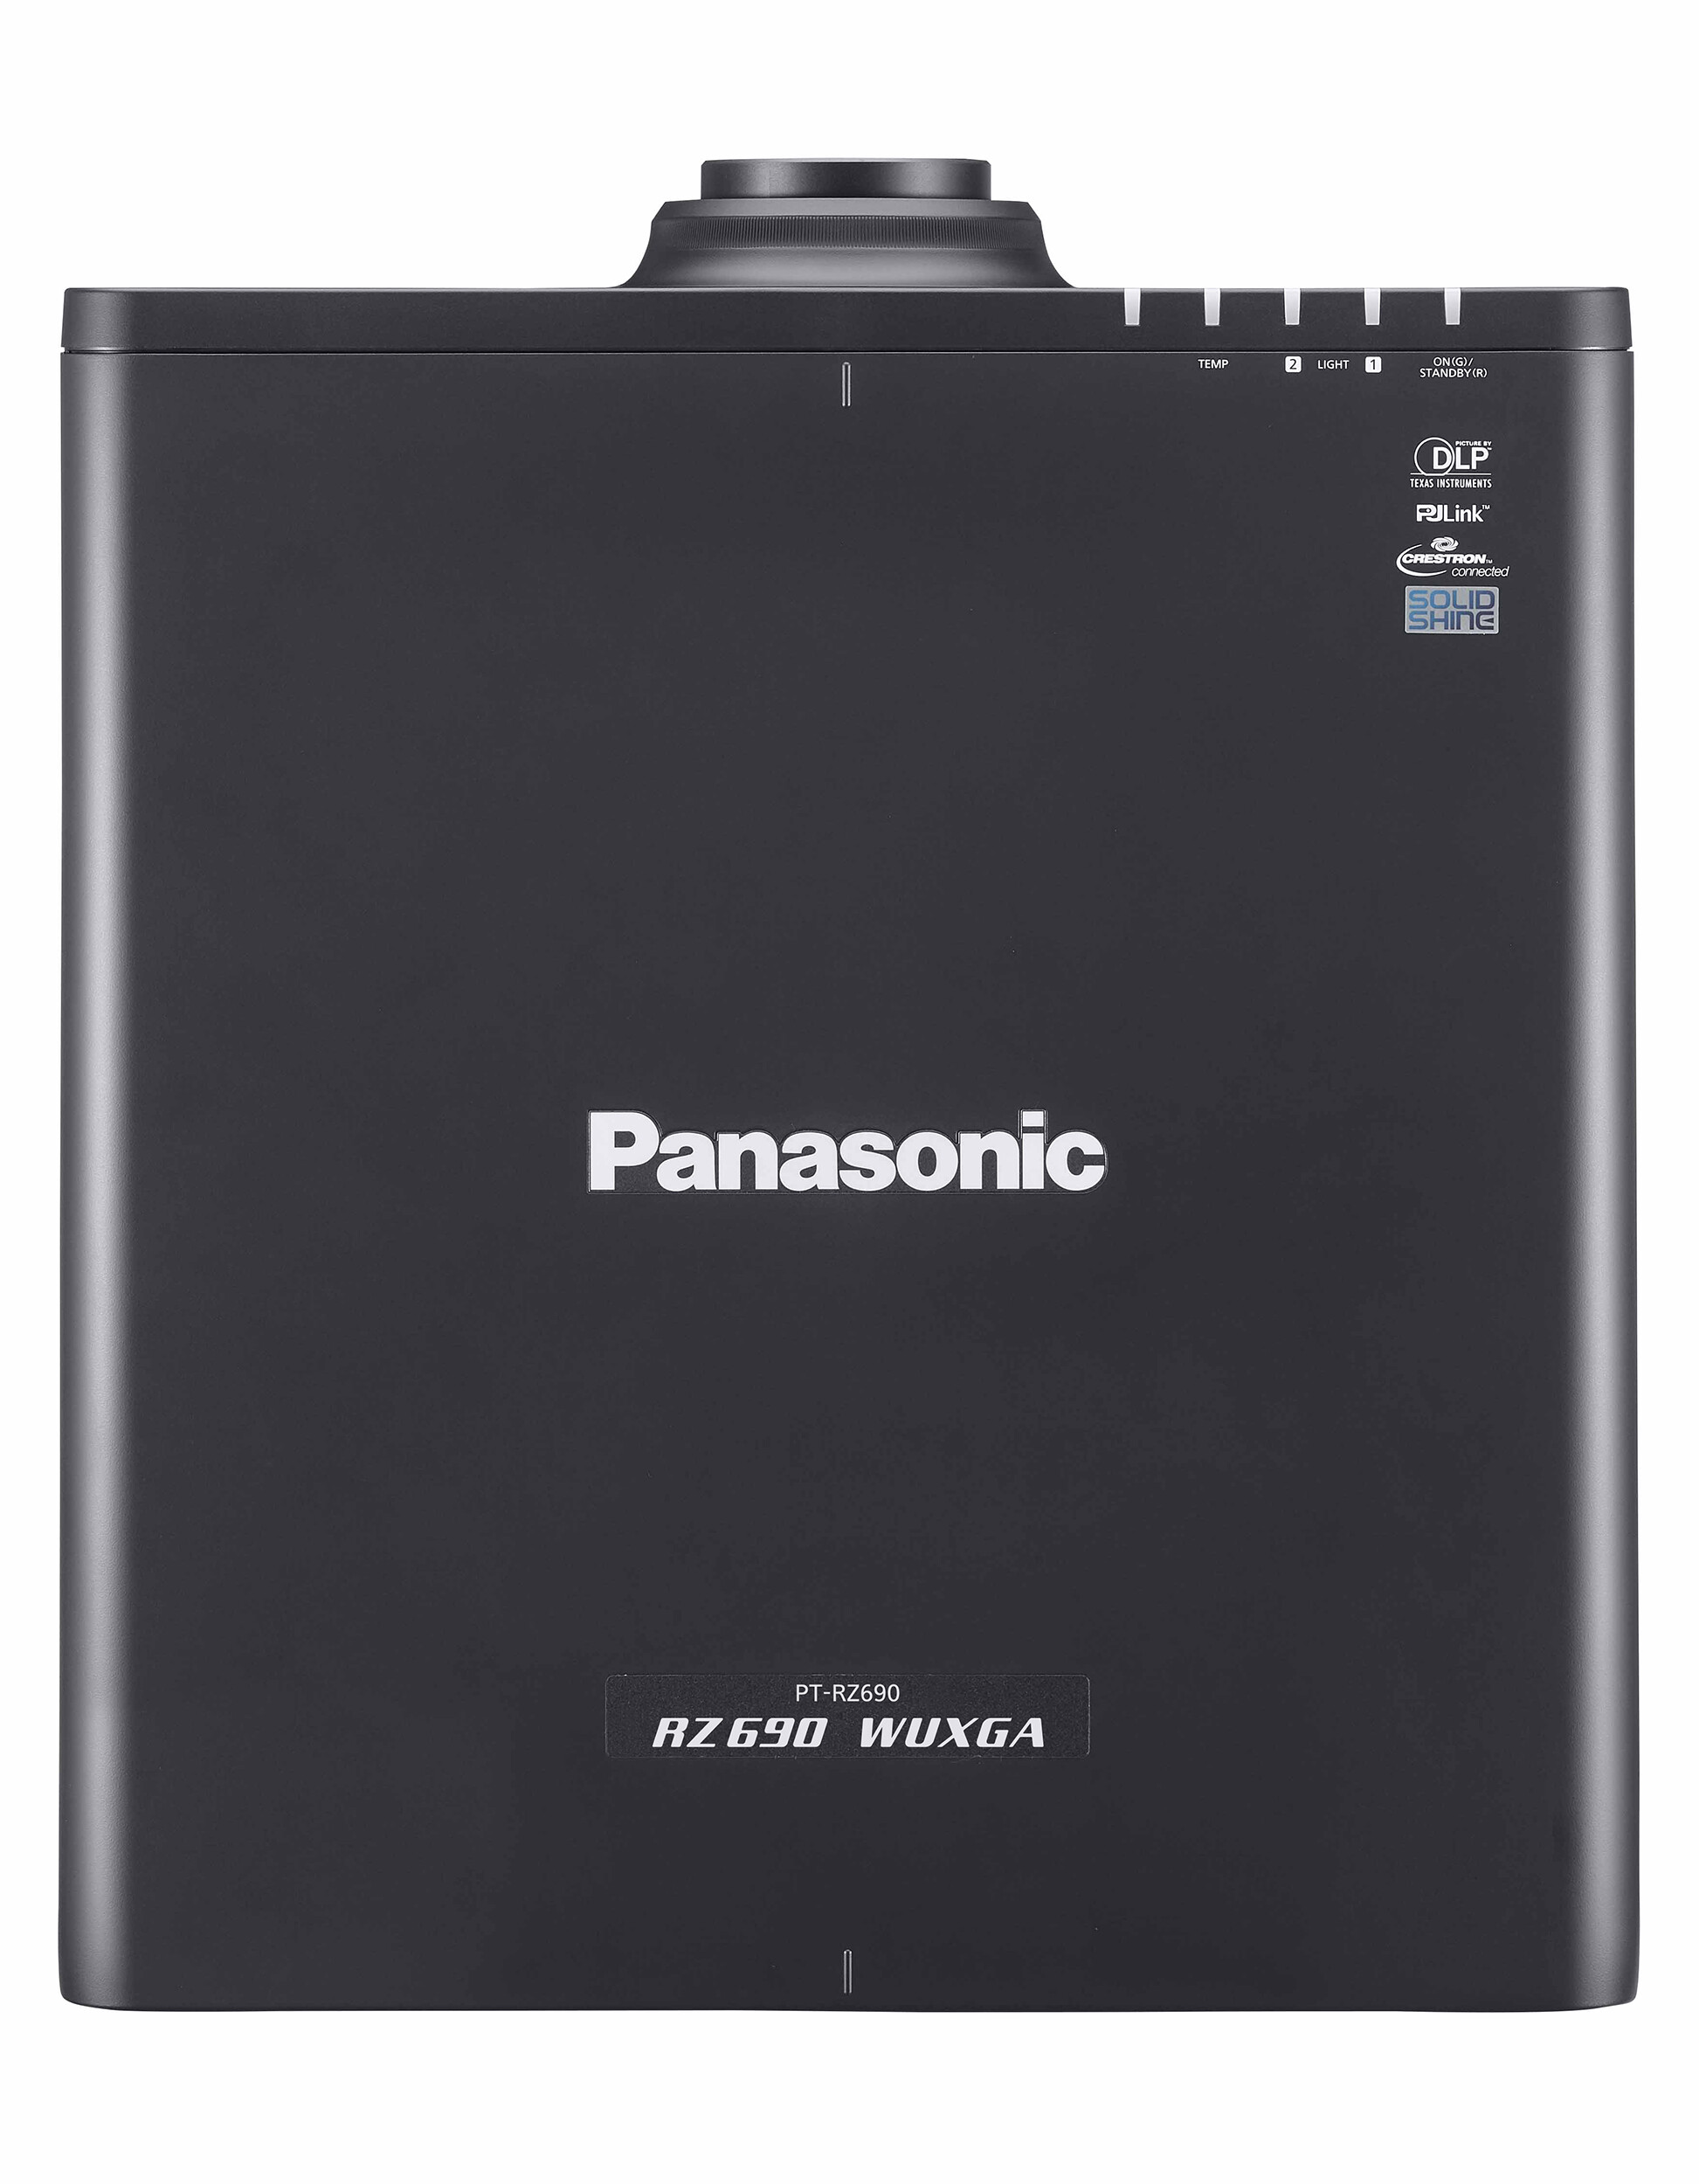 Panasonic-PT-RZ690BE-met-objectief-zwart